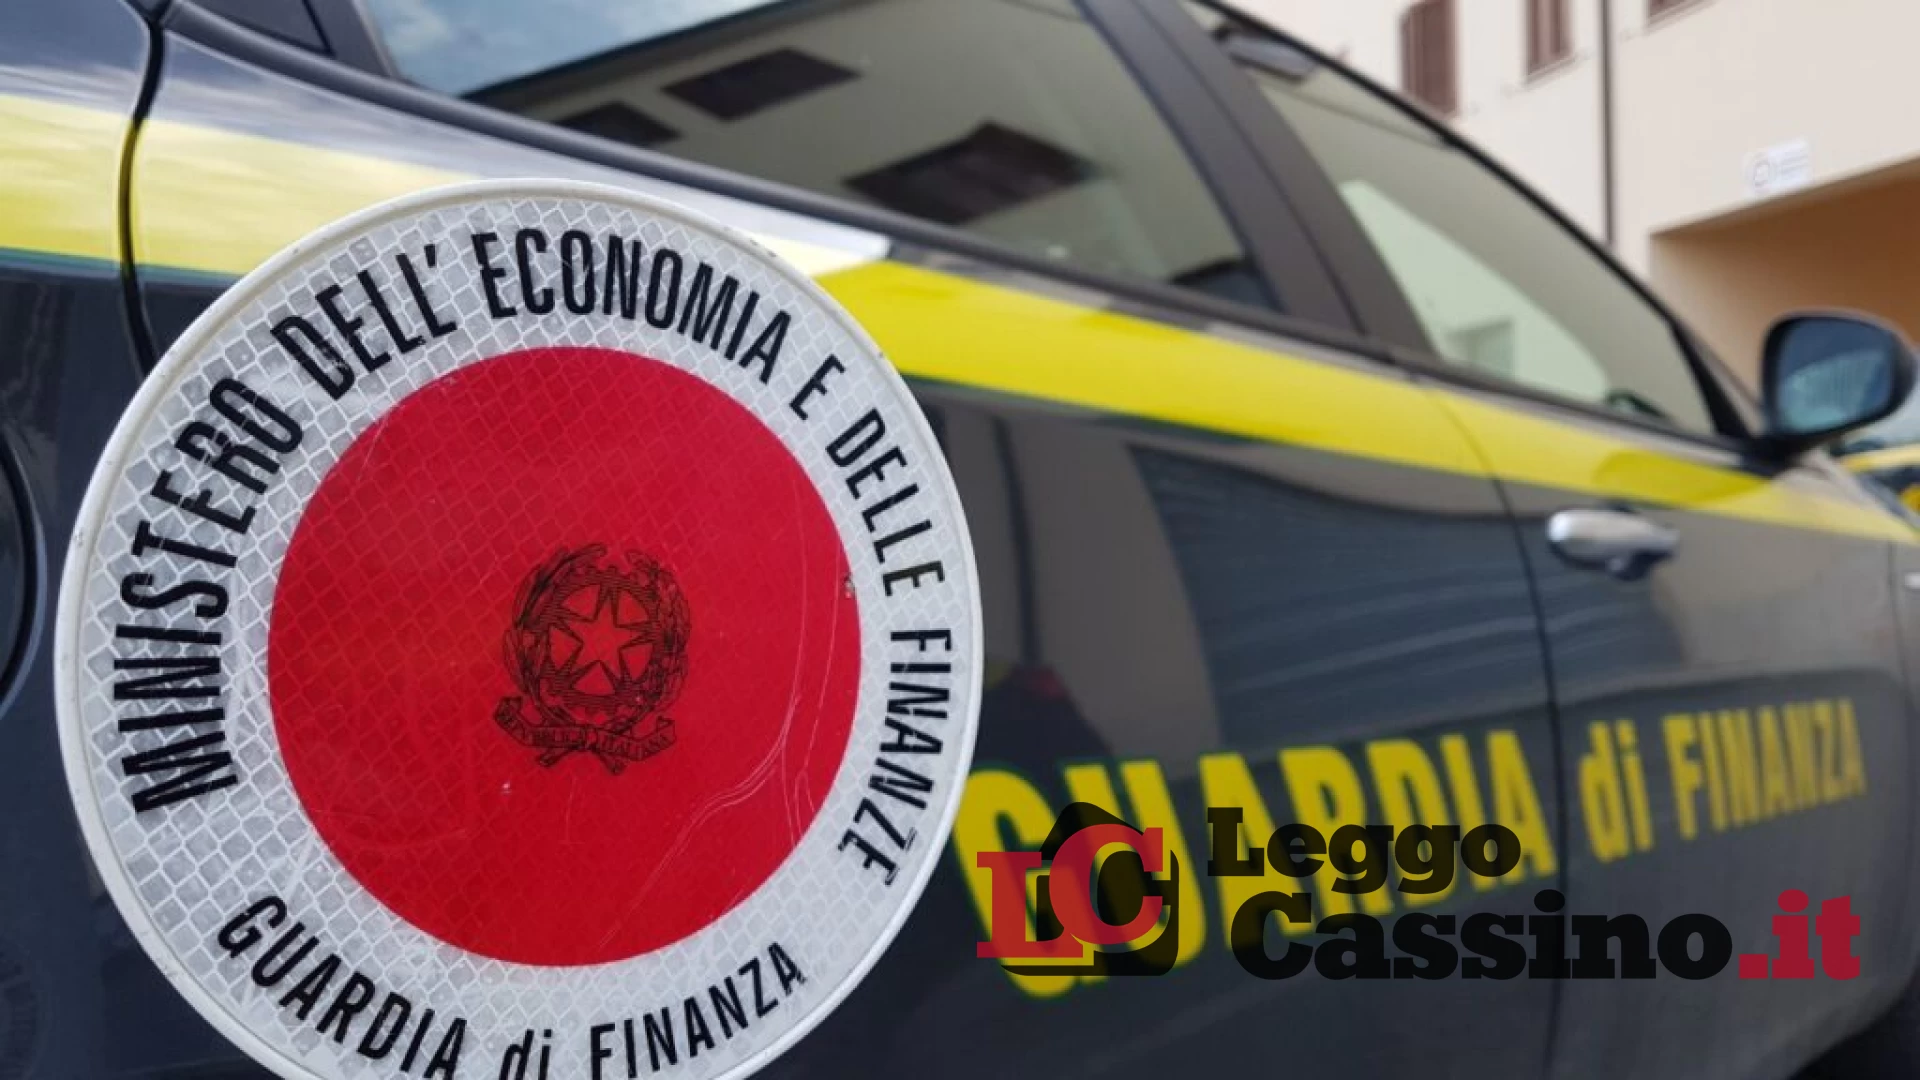 Imprenditore di Cassino condannato per usura ed estorsione, sequestrati i beni